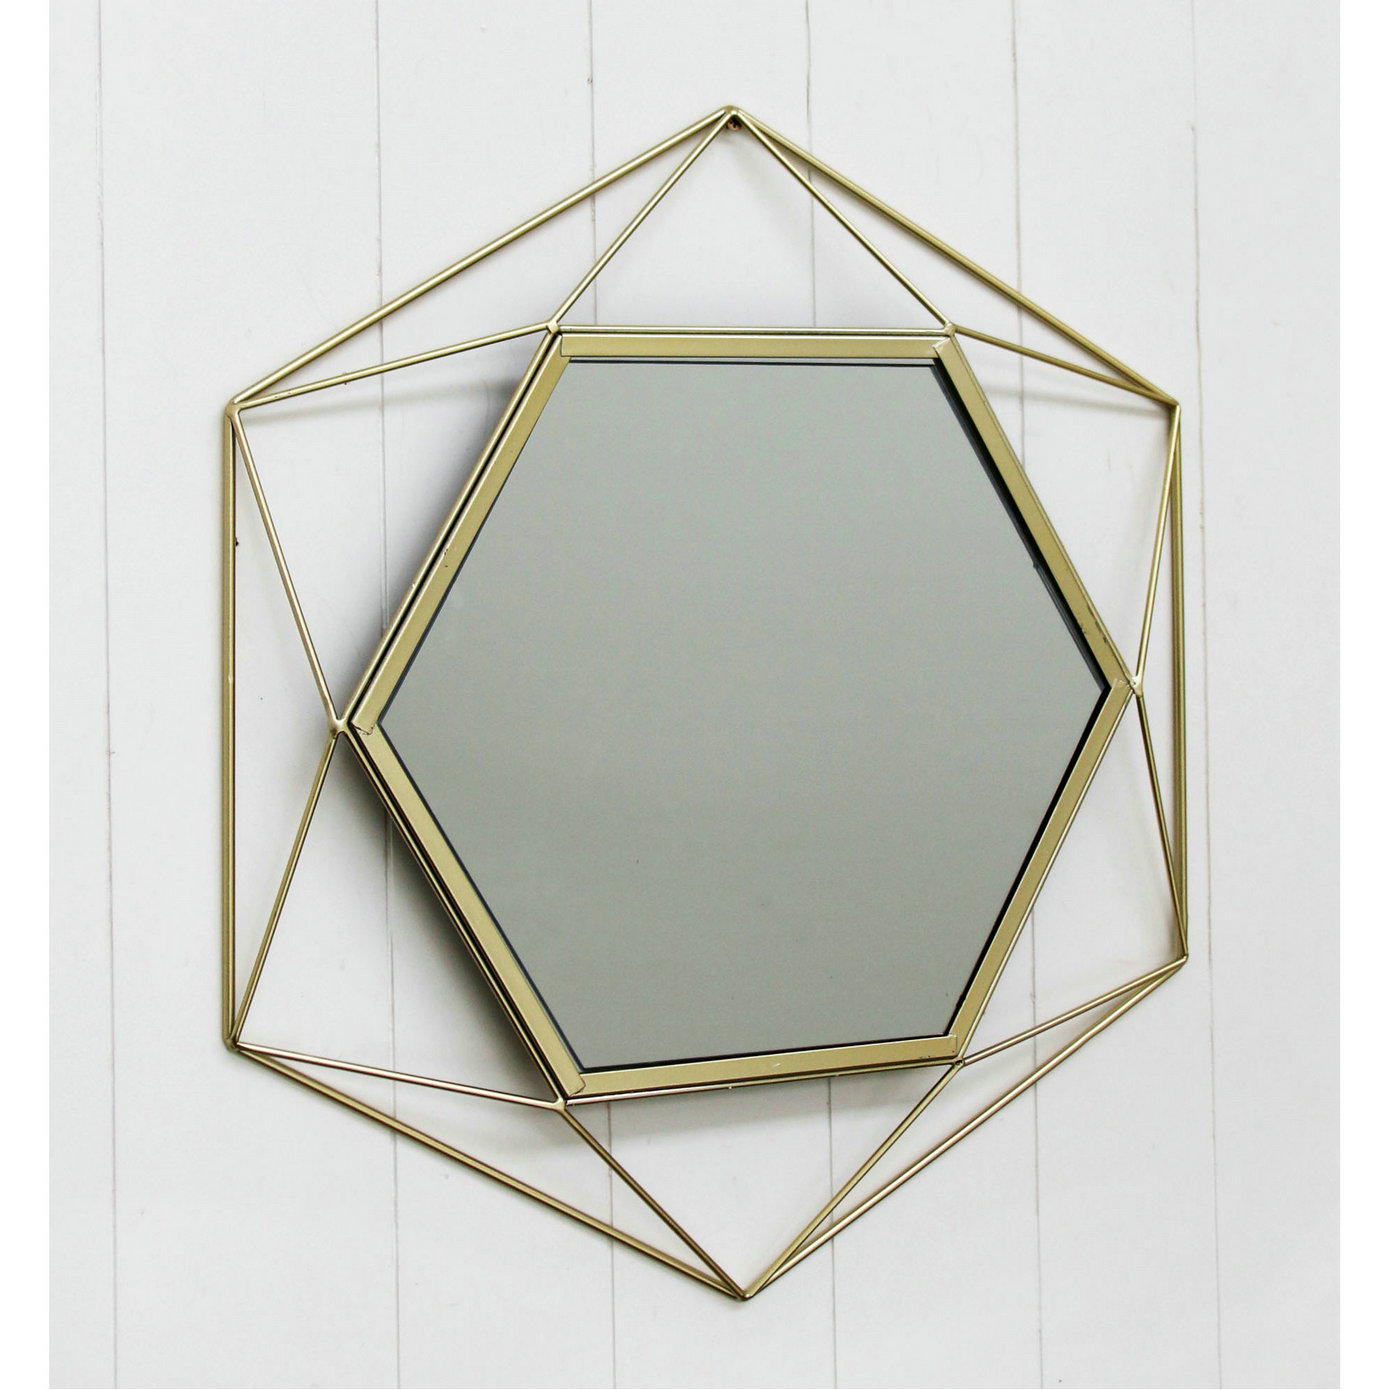 FU-22100  Hexagonal wire mirror 44x50.5x3cm